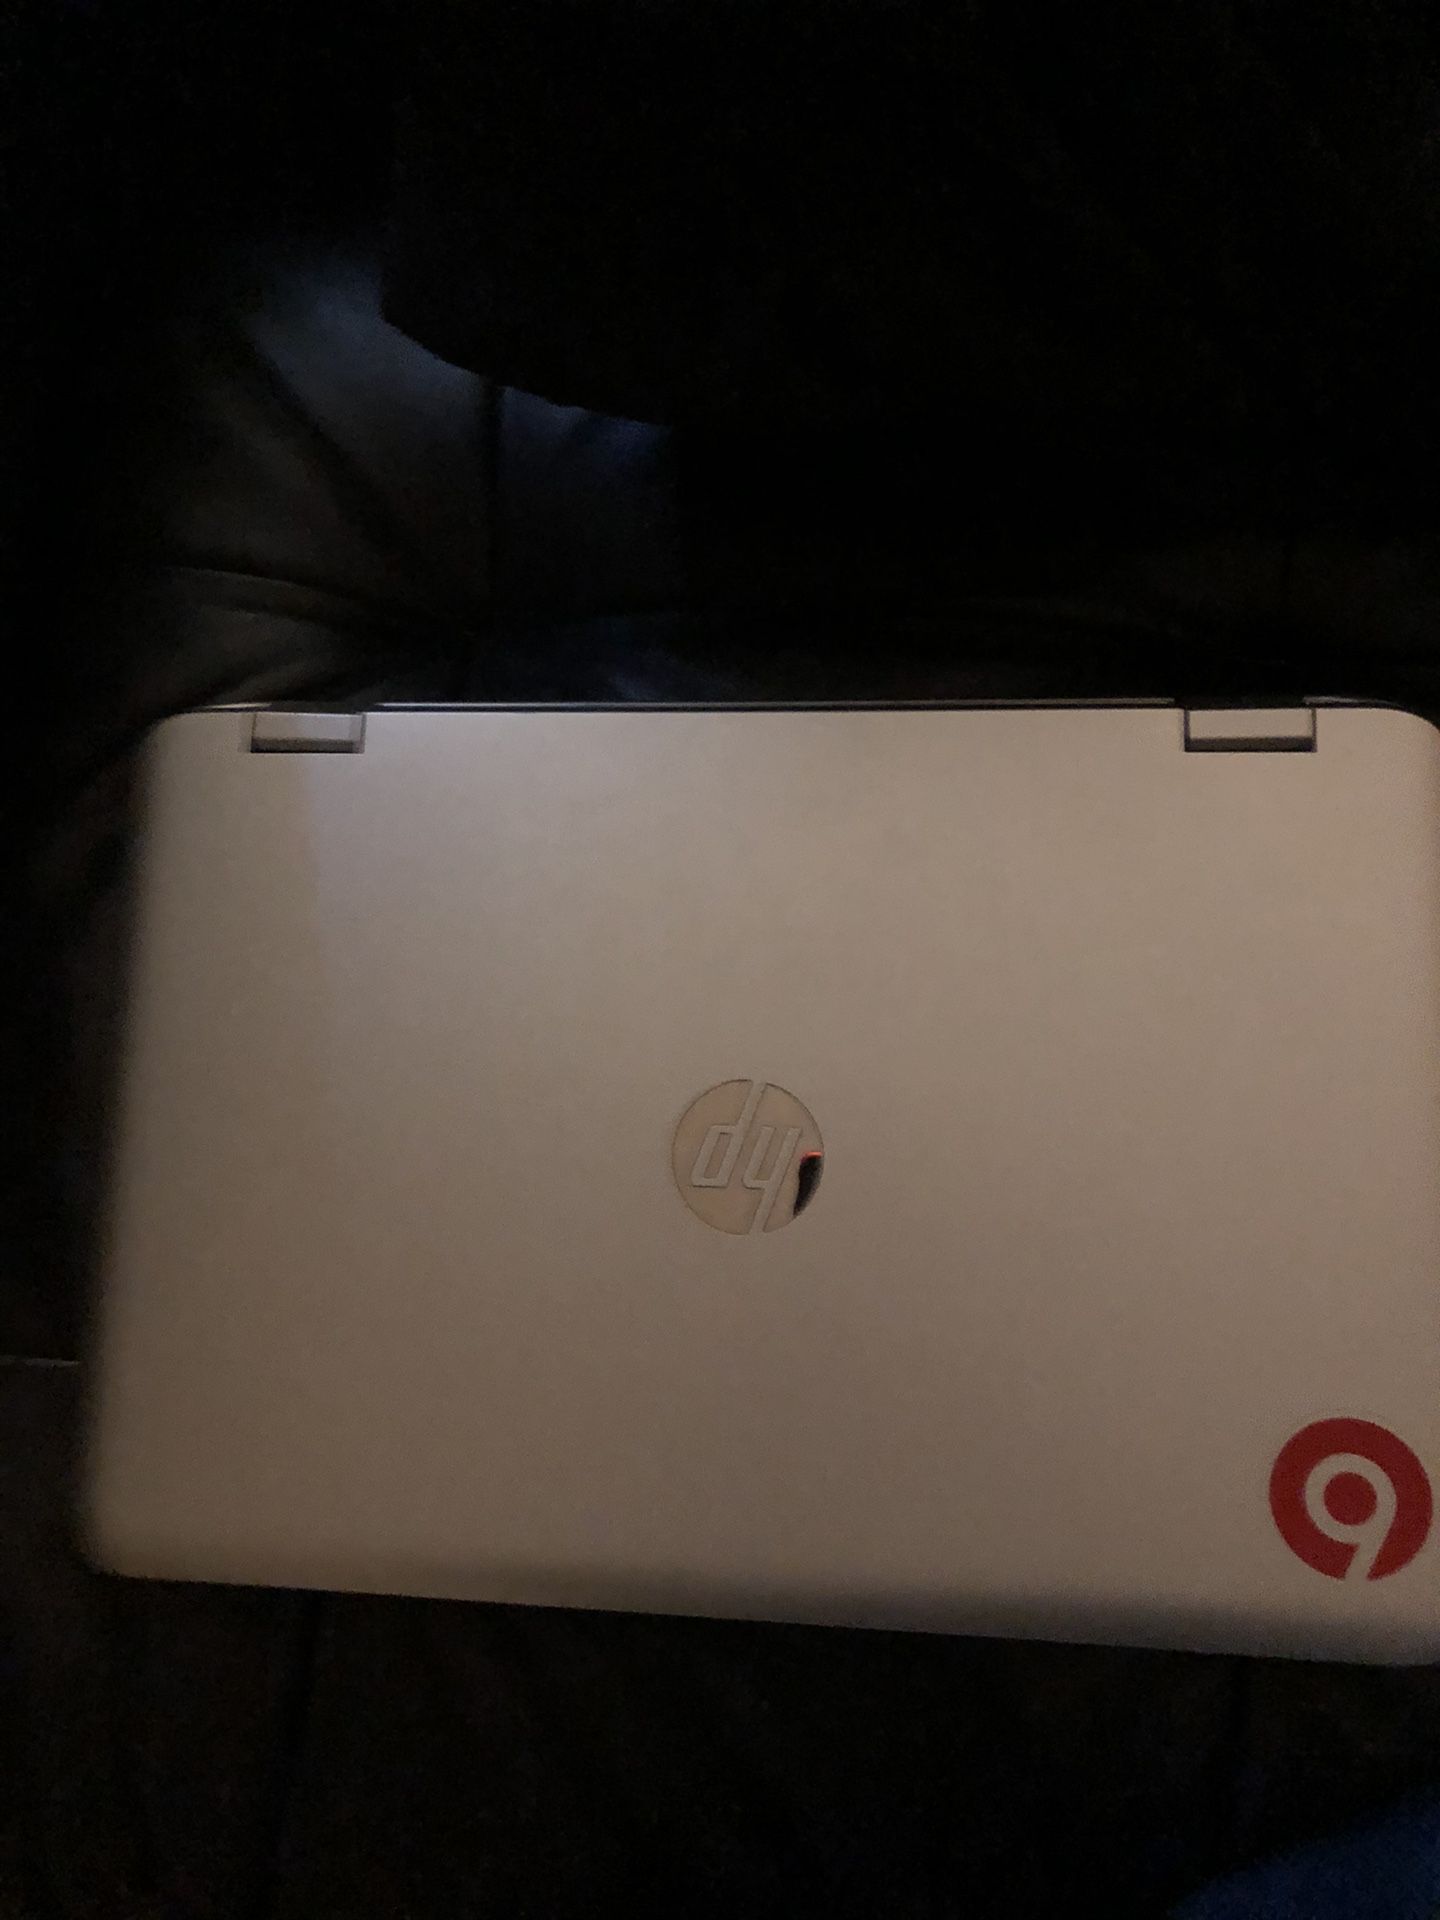 HP Envy 17 Laptop